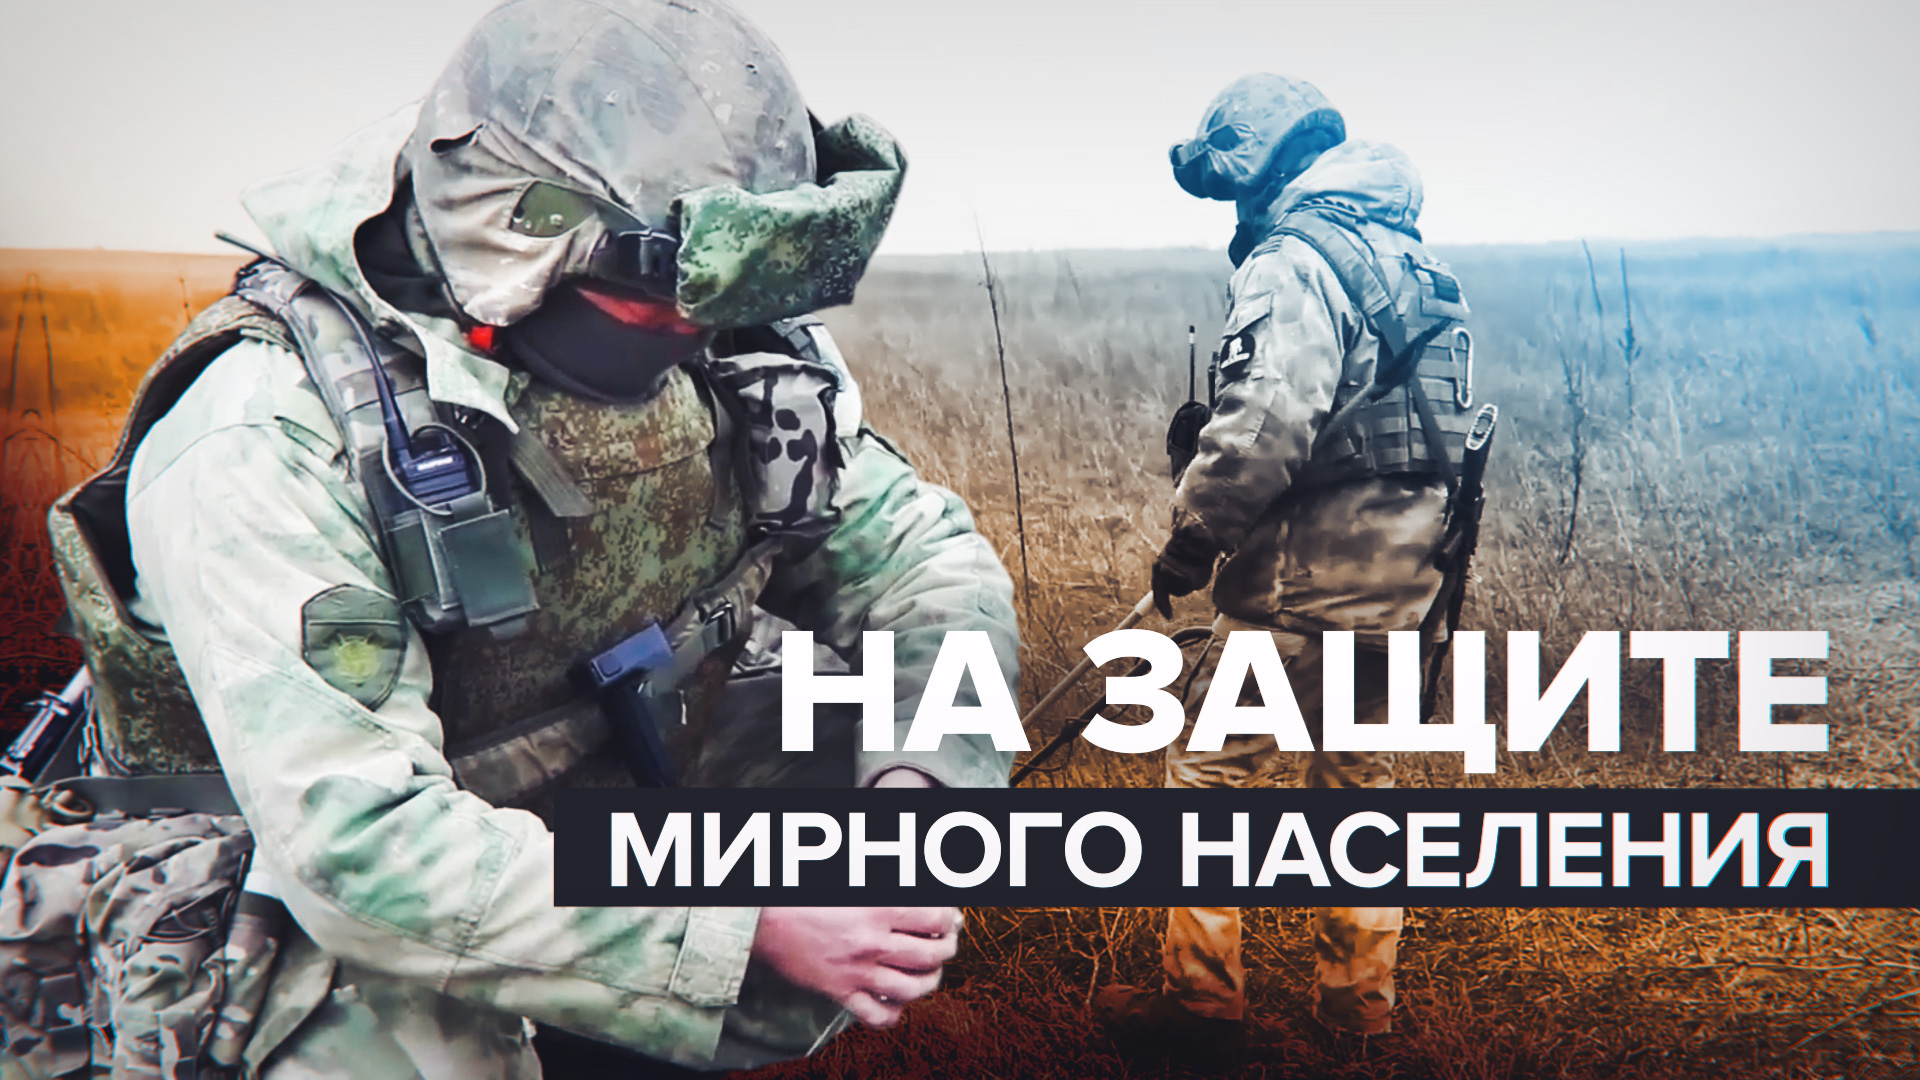 Росгвардейцы разминировали дорогу и ликвидировали схрон с оружием в ДНР — видео